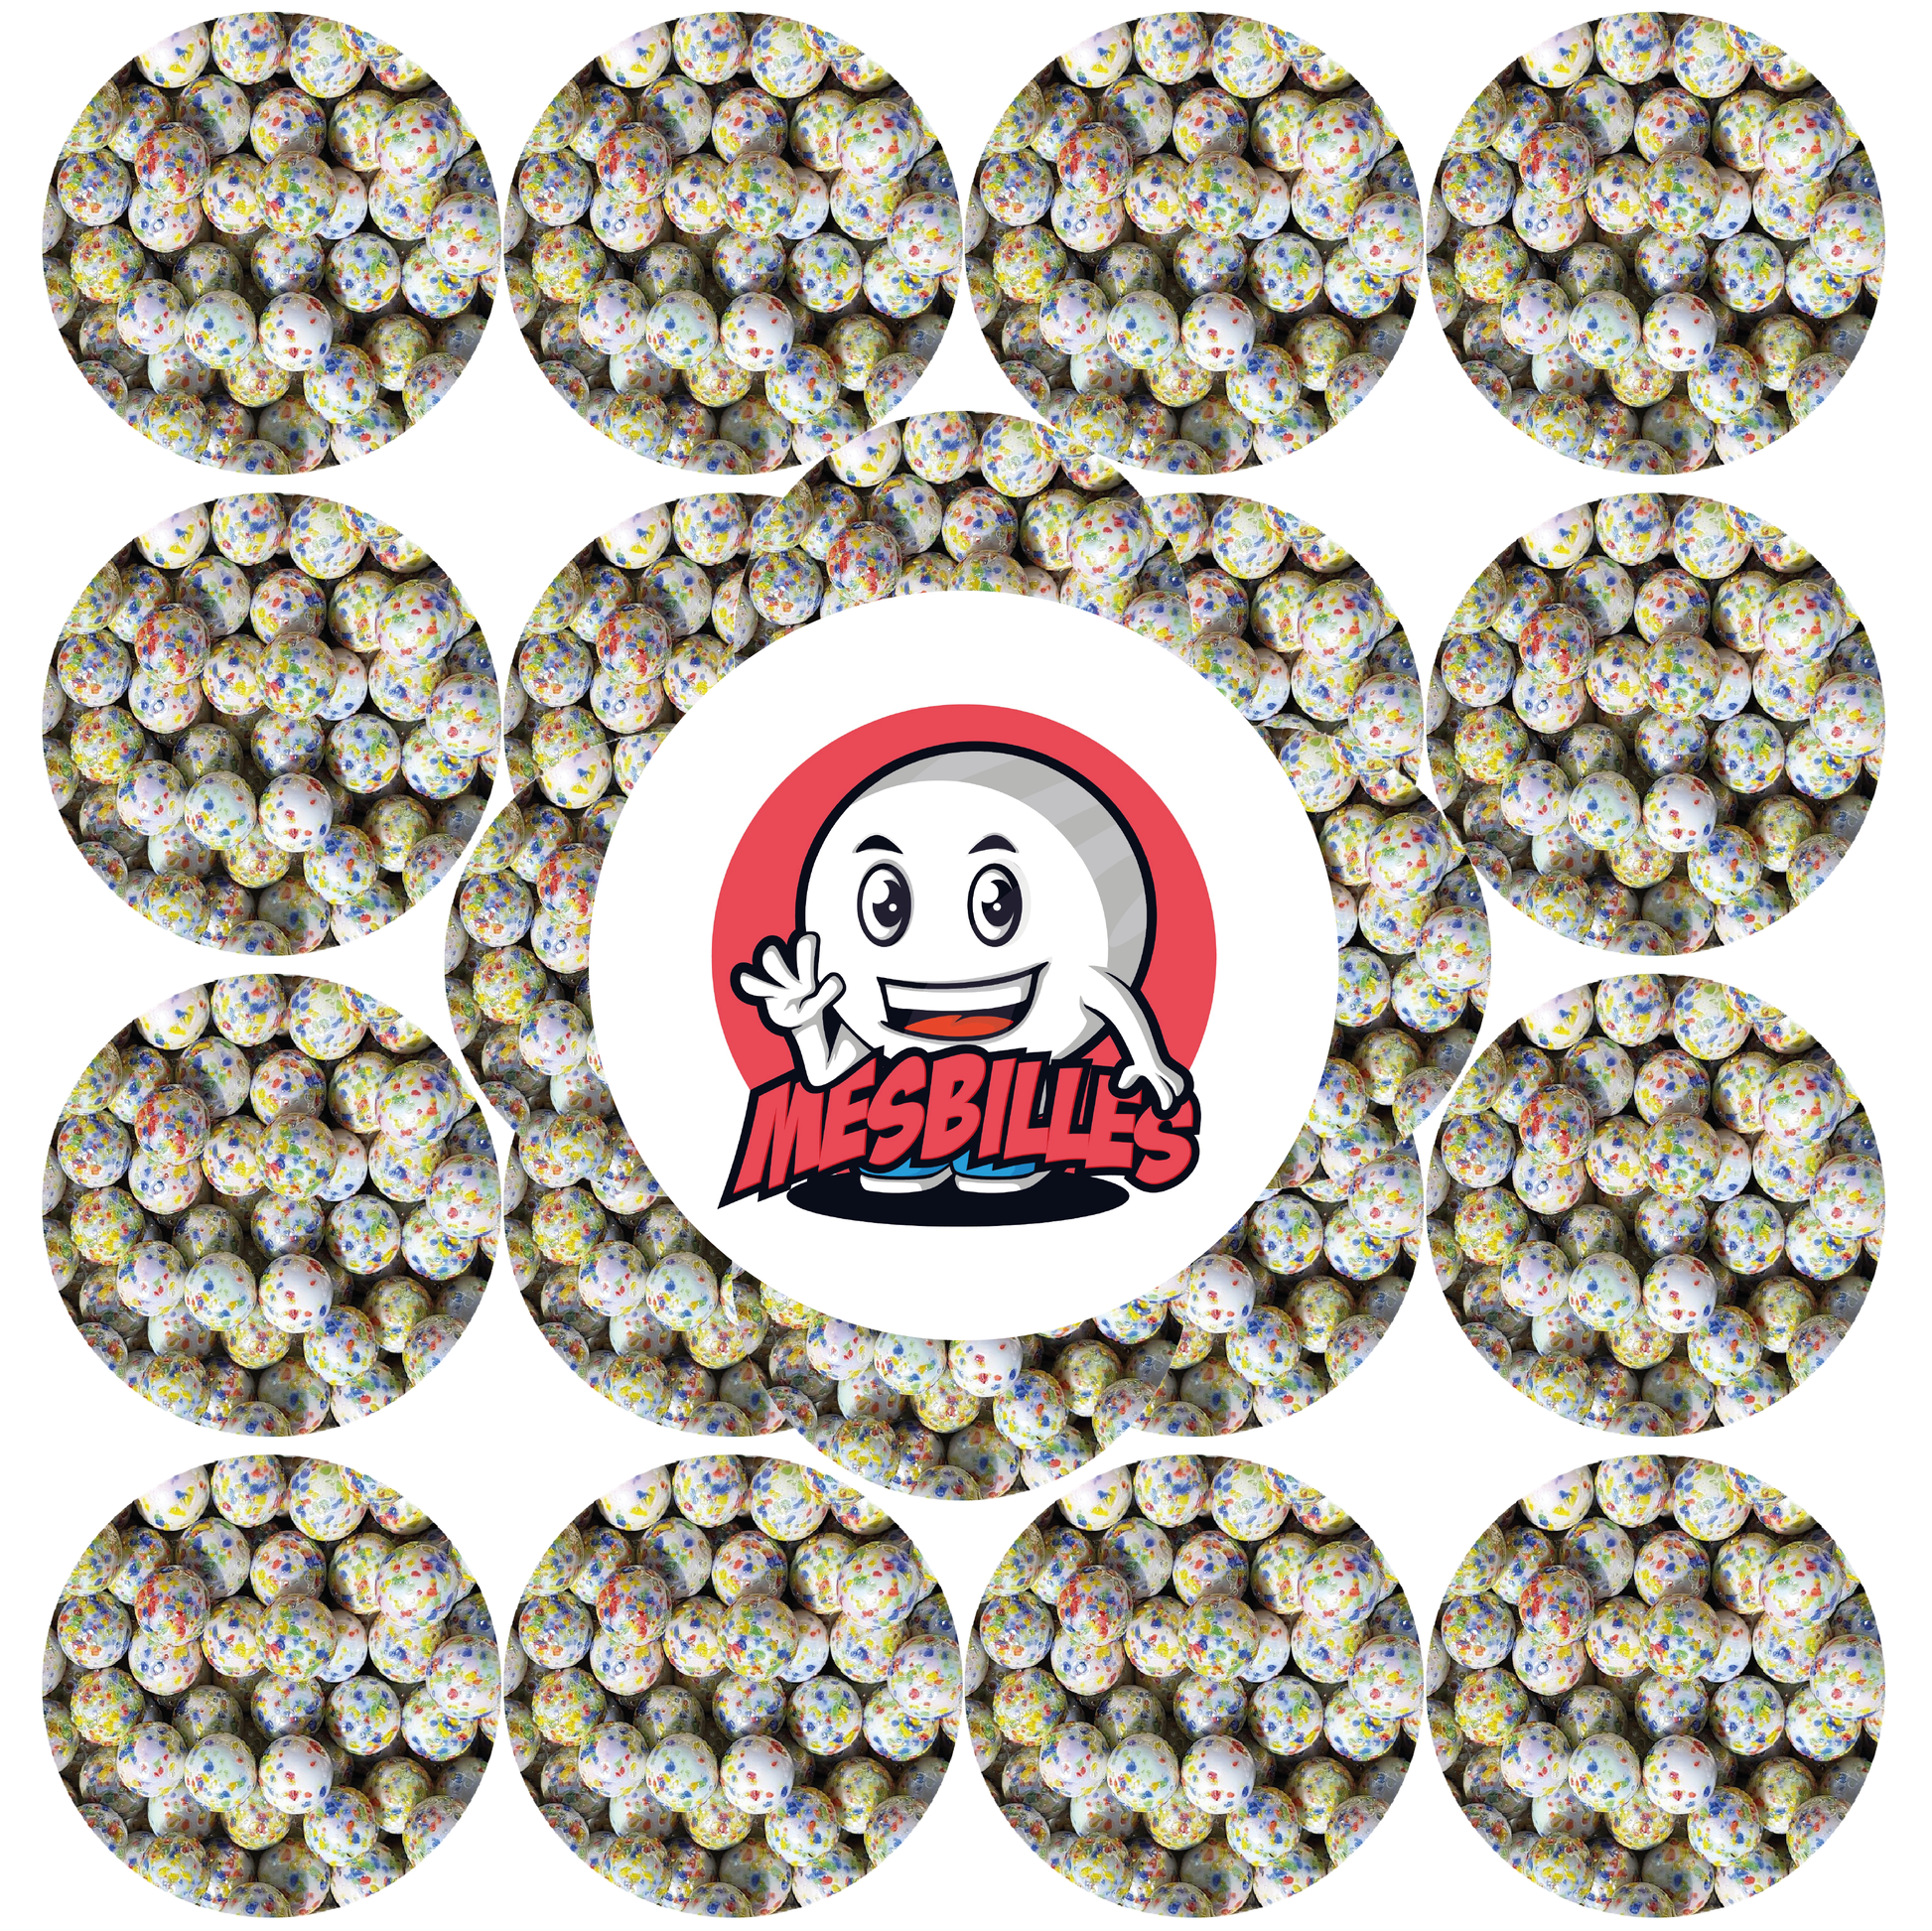 Image de la Mascotte MesBilles entourée de Billes 16 mm blanche opaque recouverte d'éclats multi-couleurs